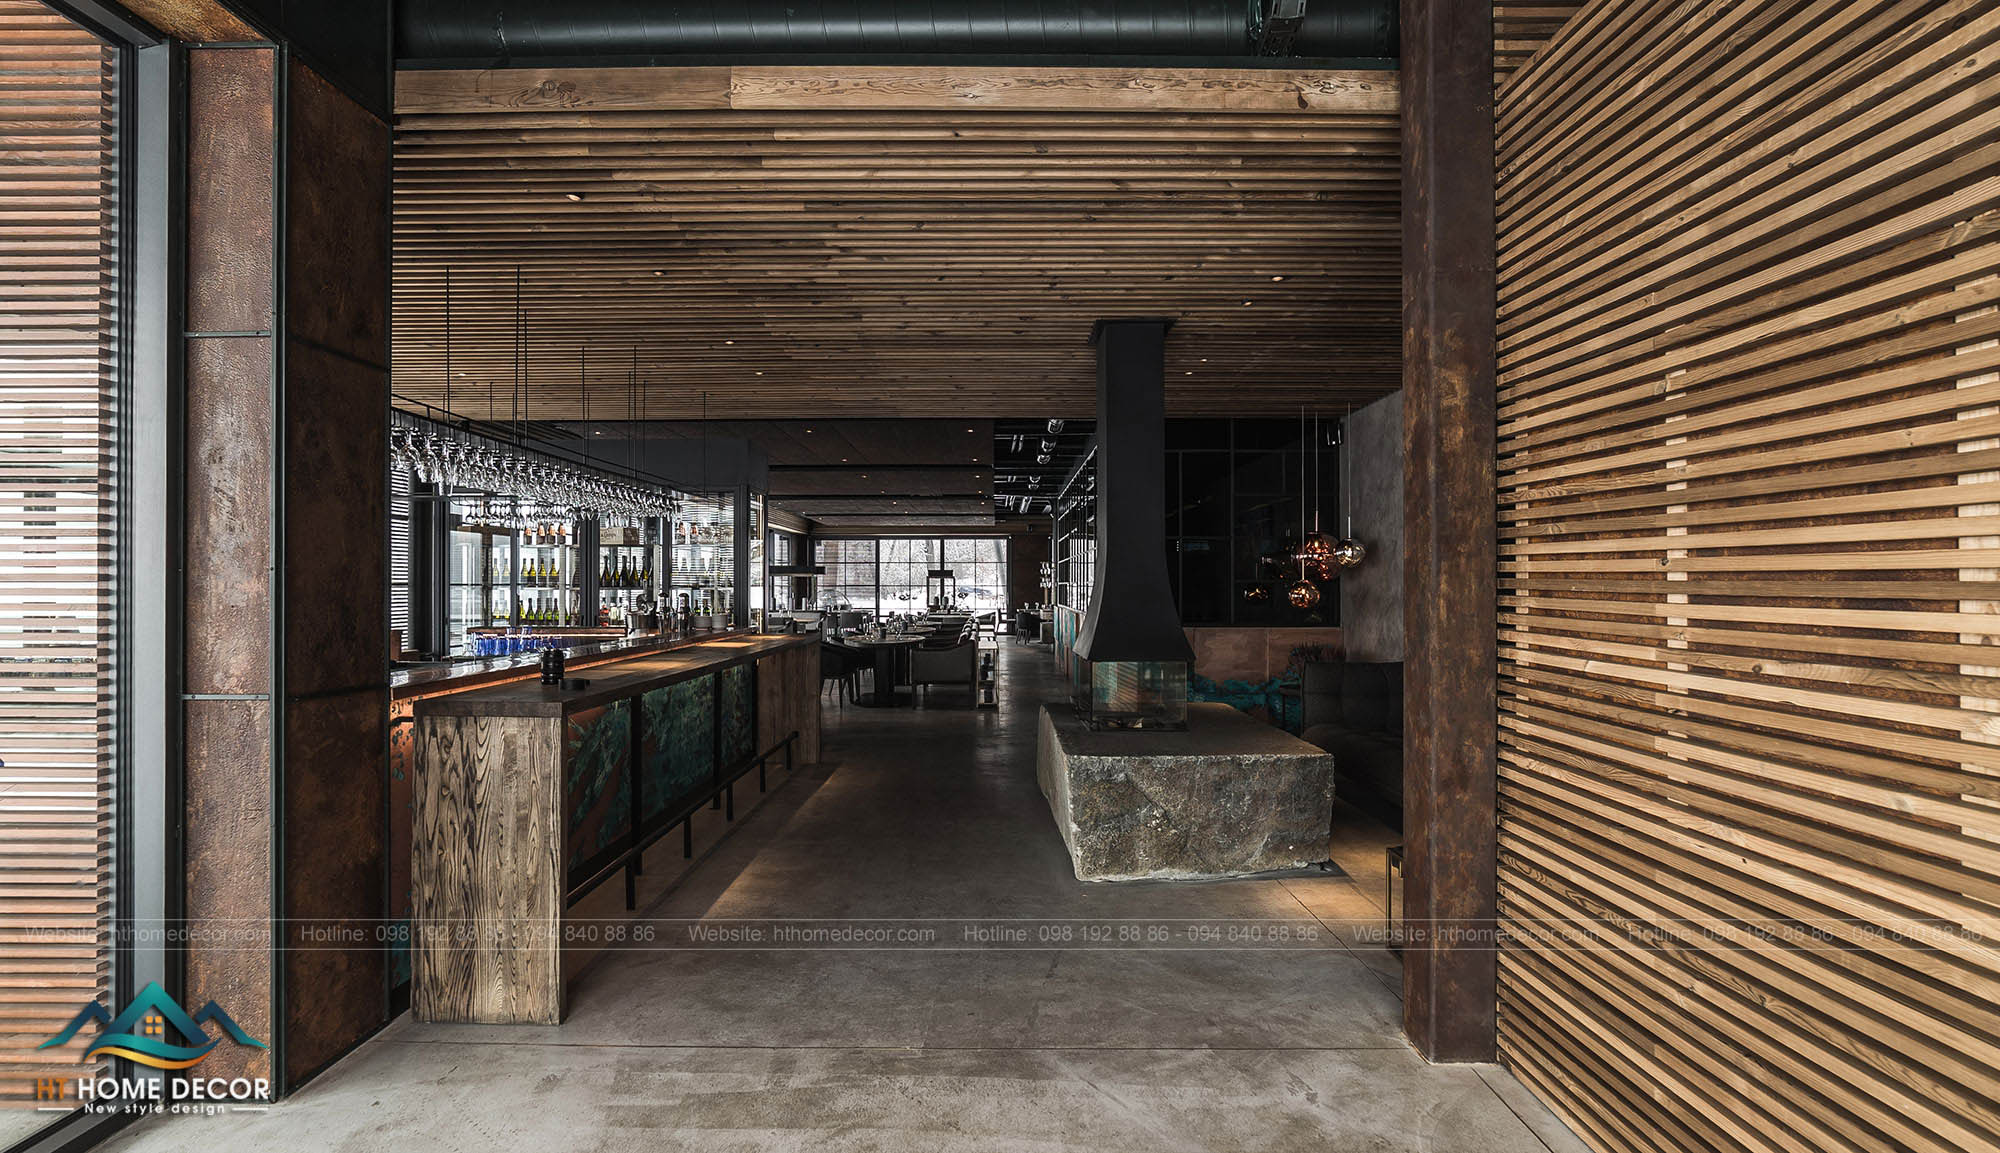 Nhà hàng được thiết kế ấn tượng với tường, trần nhà bằng chất liệu gỗ. Tự nhiên, gần gũi và vô cùng ấm áp.